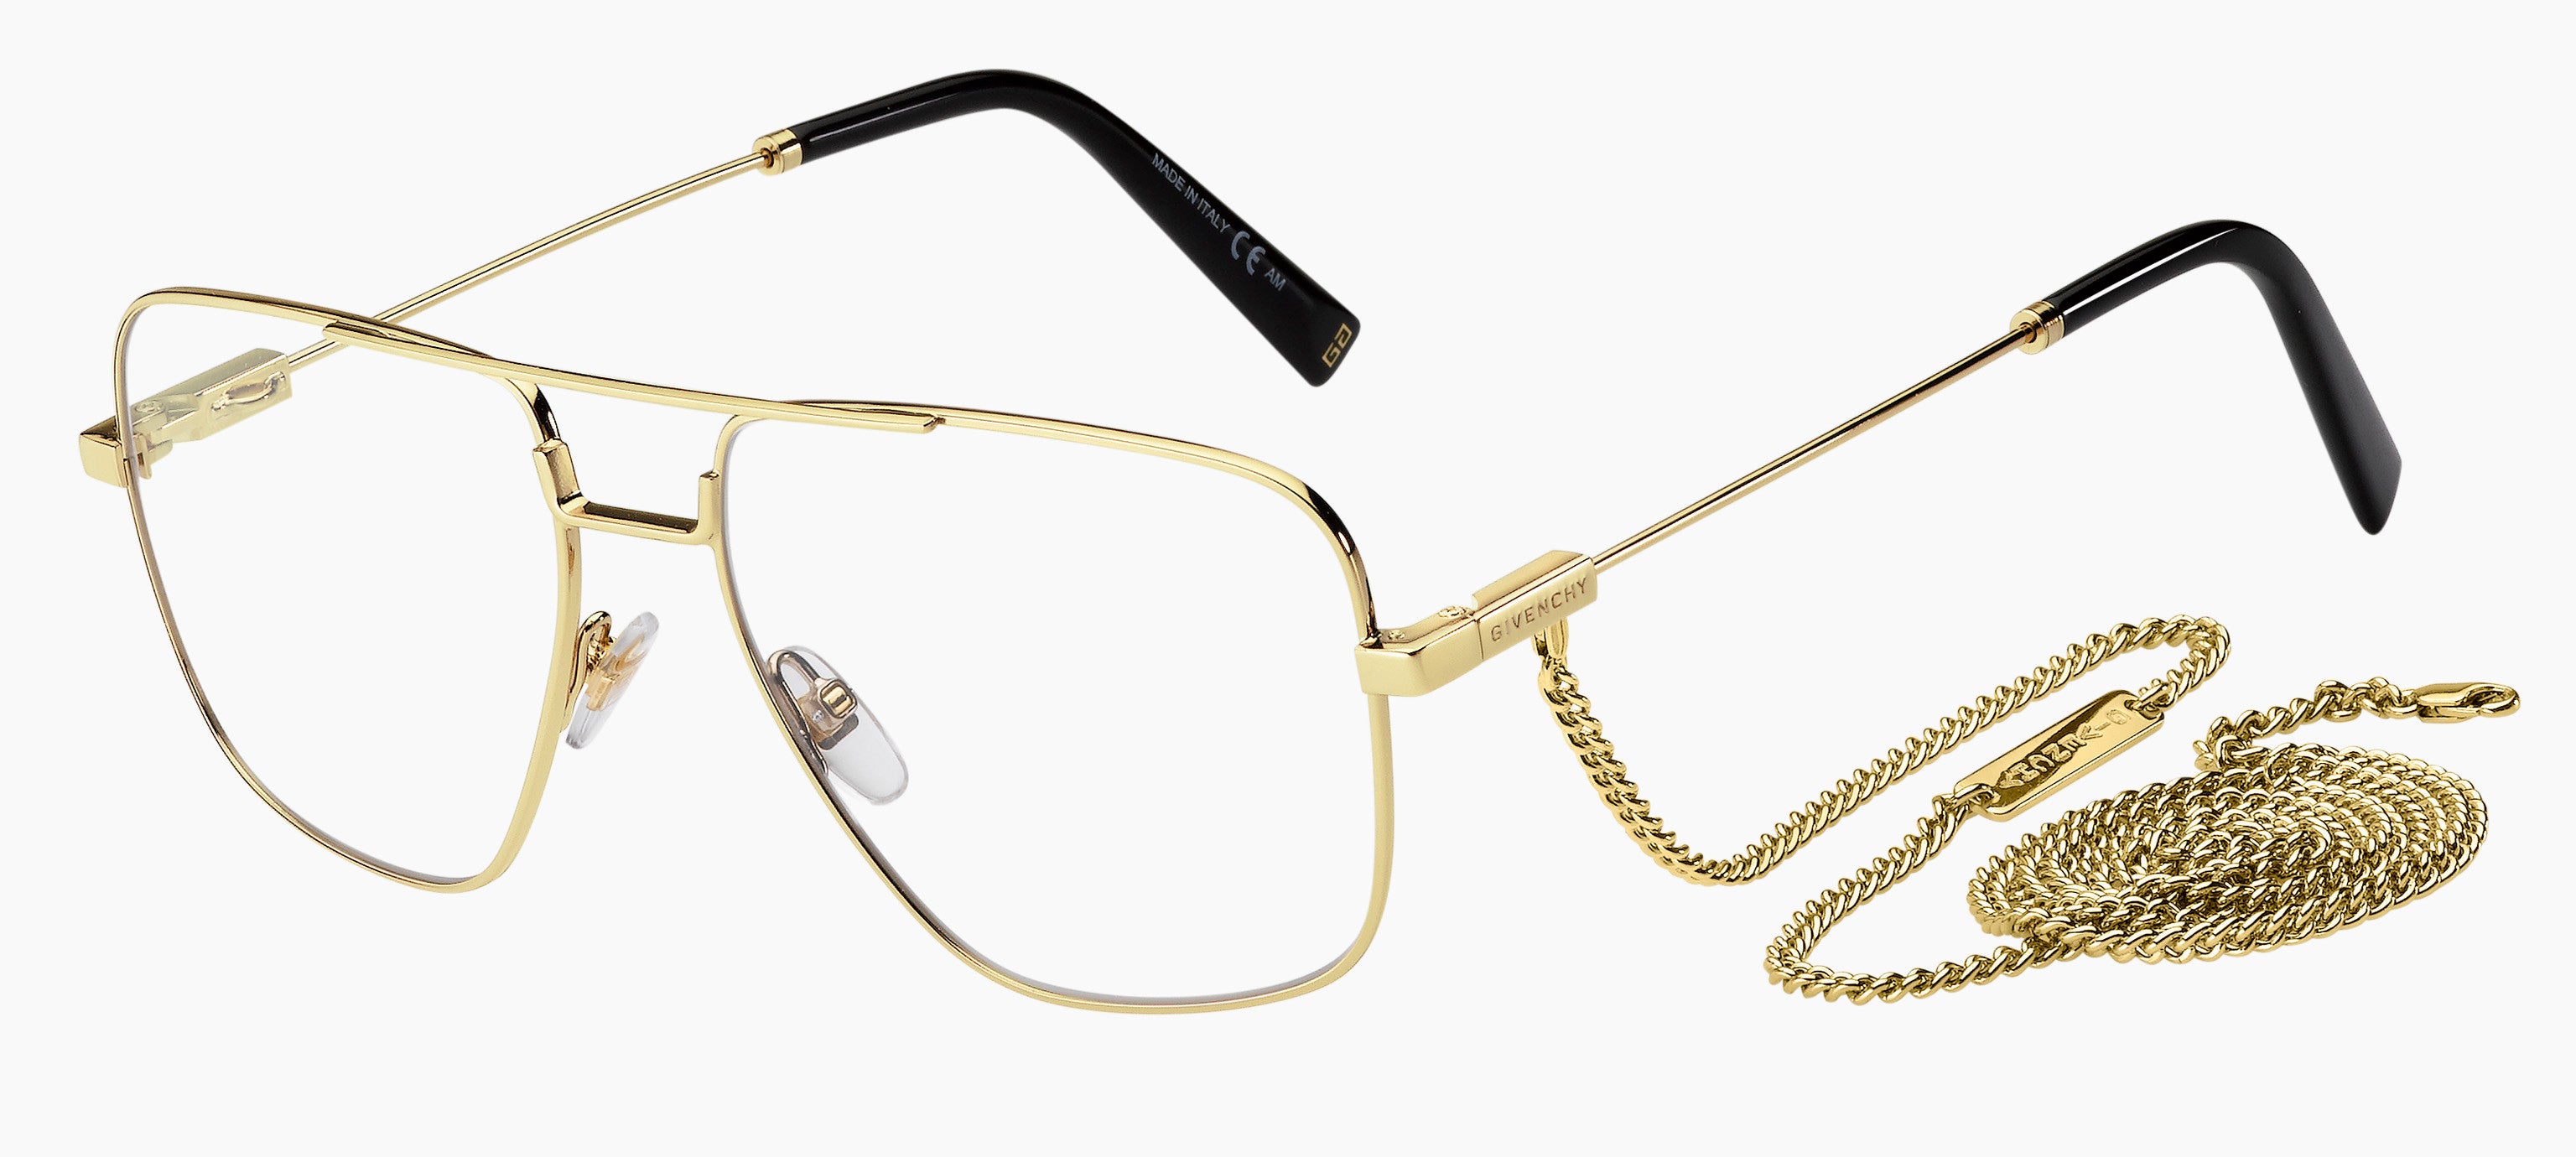  Givenchy 0134 Square Eyeglasses 0J5G-0J5G  Gold (00 Demo Lens)